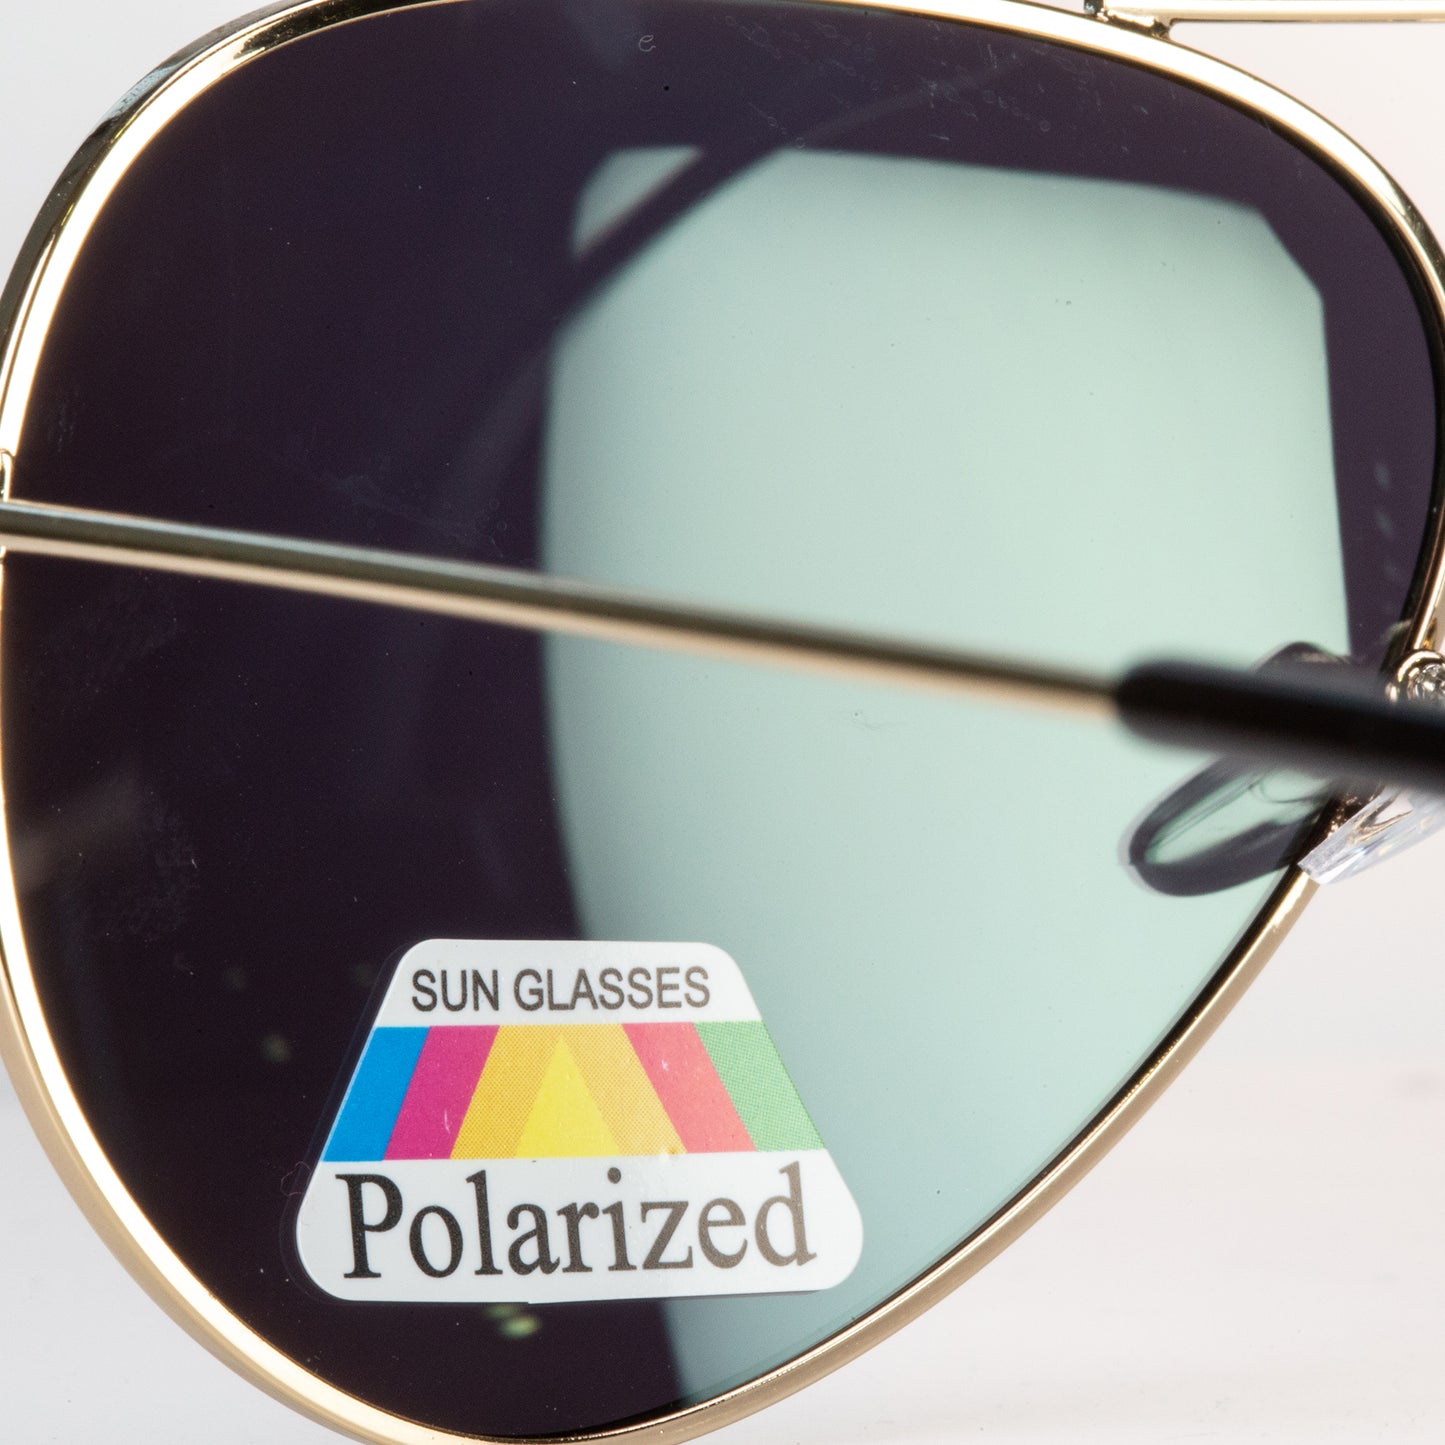 Emporia Italy - séria Aviator "DŽUNGĽA", polarizované slnečné okuliare s pevným puzdrom a čistiacou handričkou, žltozelené šošovky, obrúčky zlatej farby